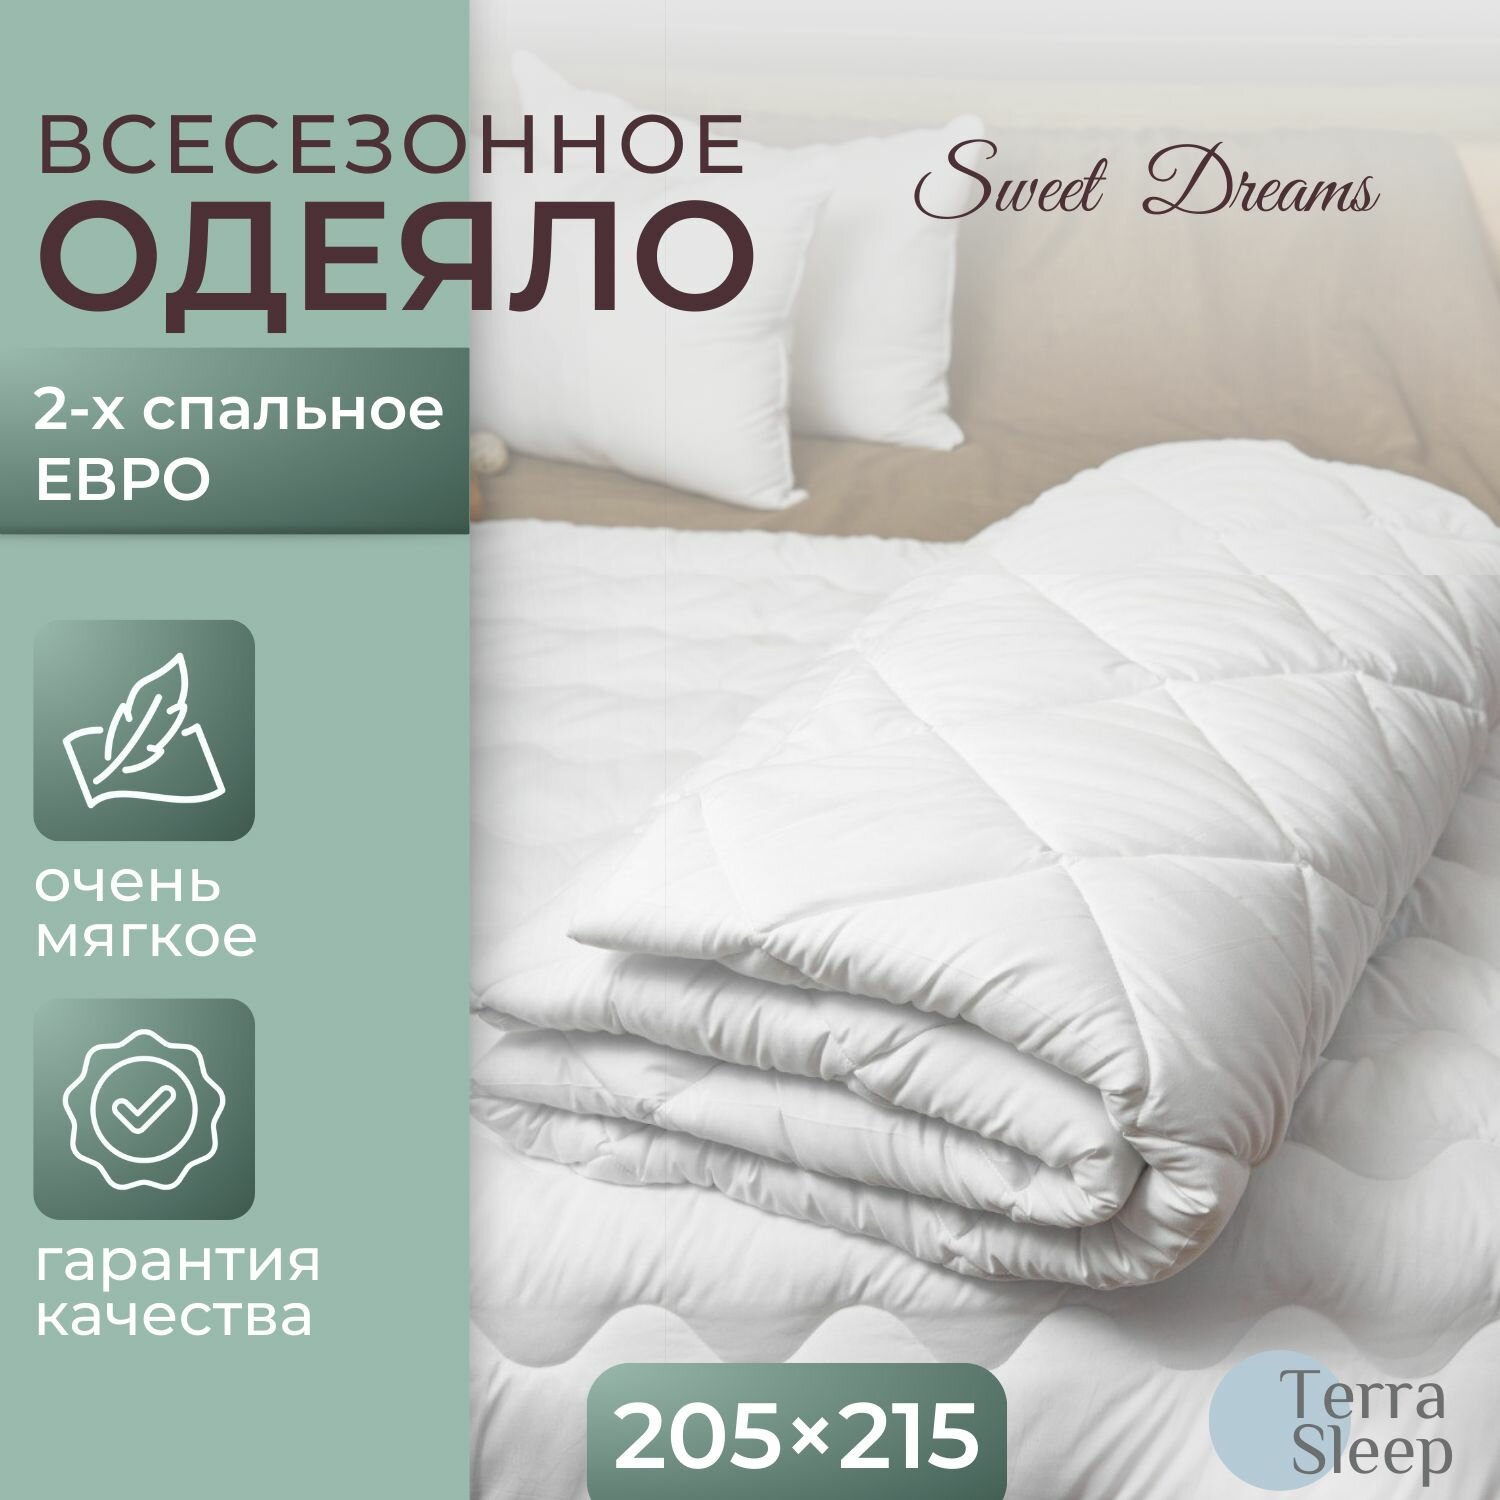 Одеяло Sweet Dreams, 2 спальное Евро 205х215 см, всесезонное, облегченное, гипоаллергенный наполнитель Ютфайбер, декоративная стежка большой ромб 150 г/м2